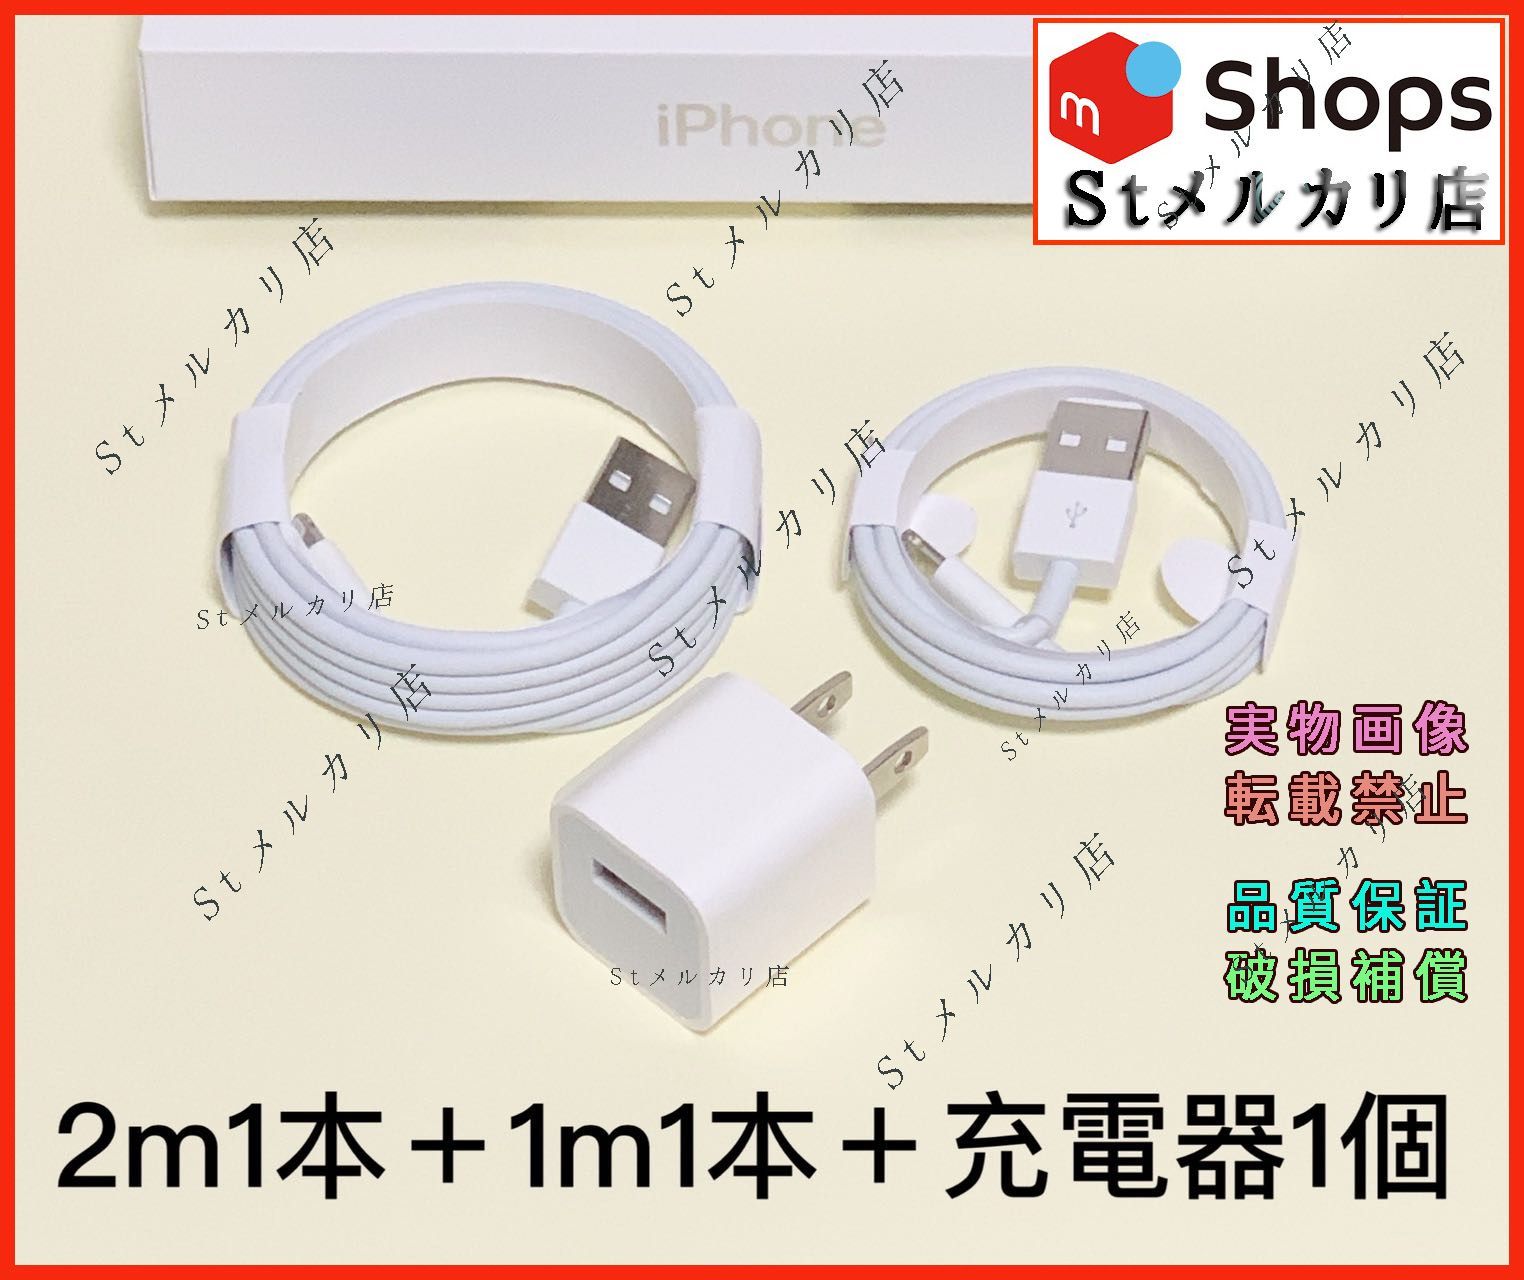 1m1本 iPhone 充電器ライトニングケーブル 純正品同等(yH)